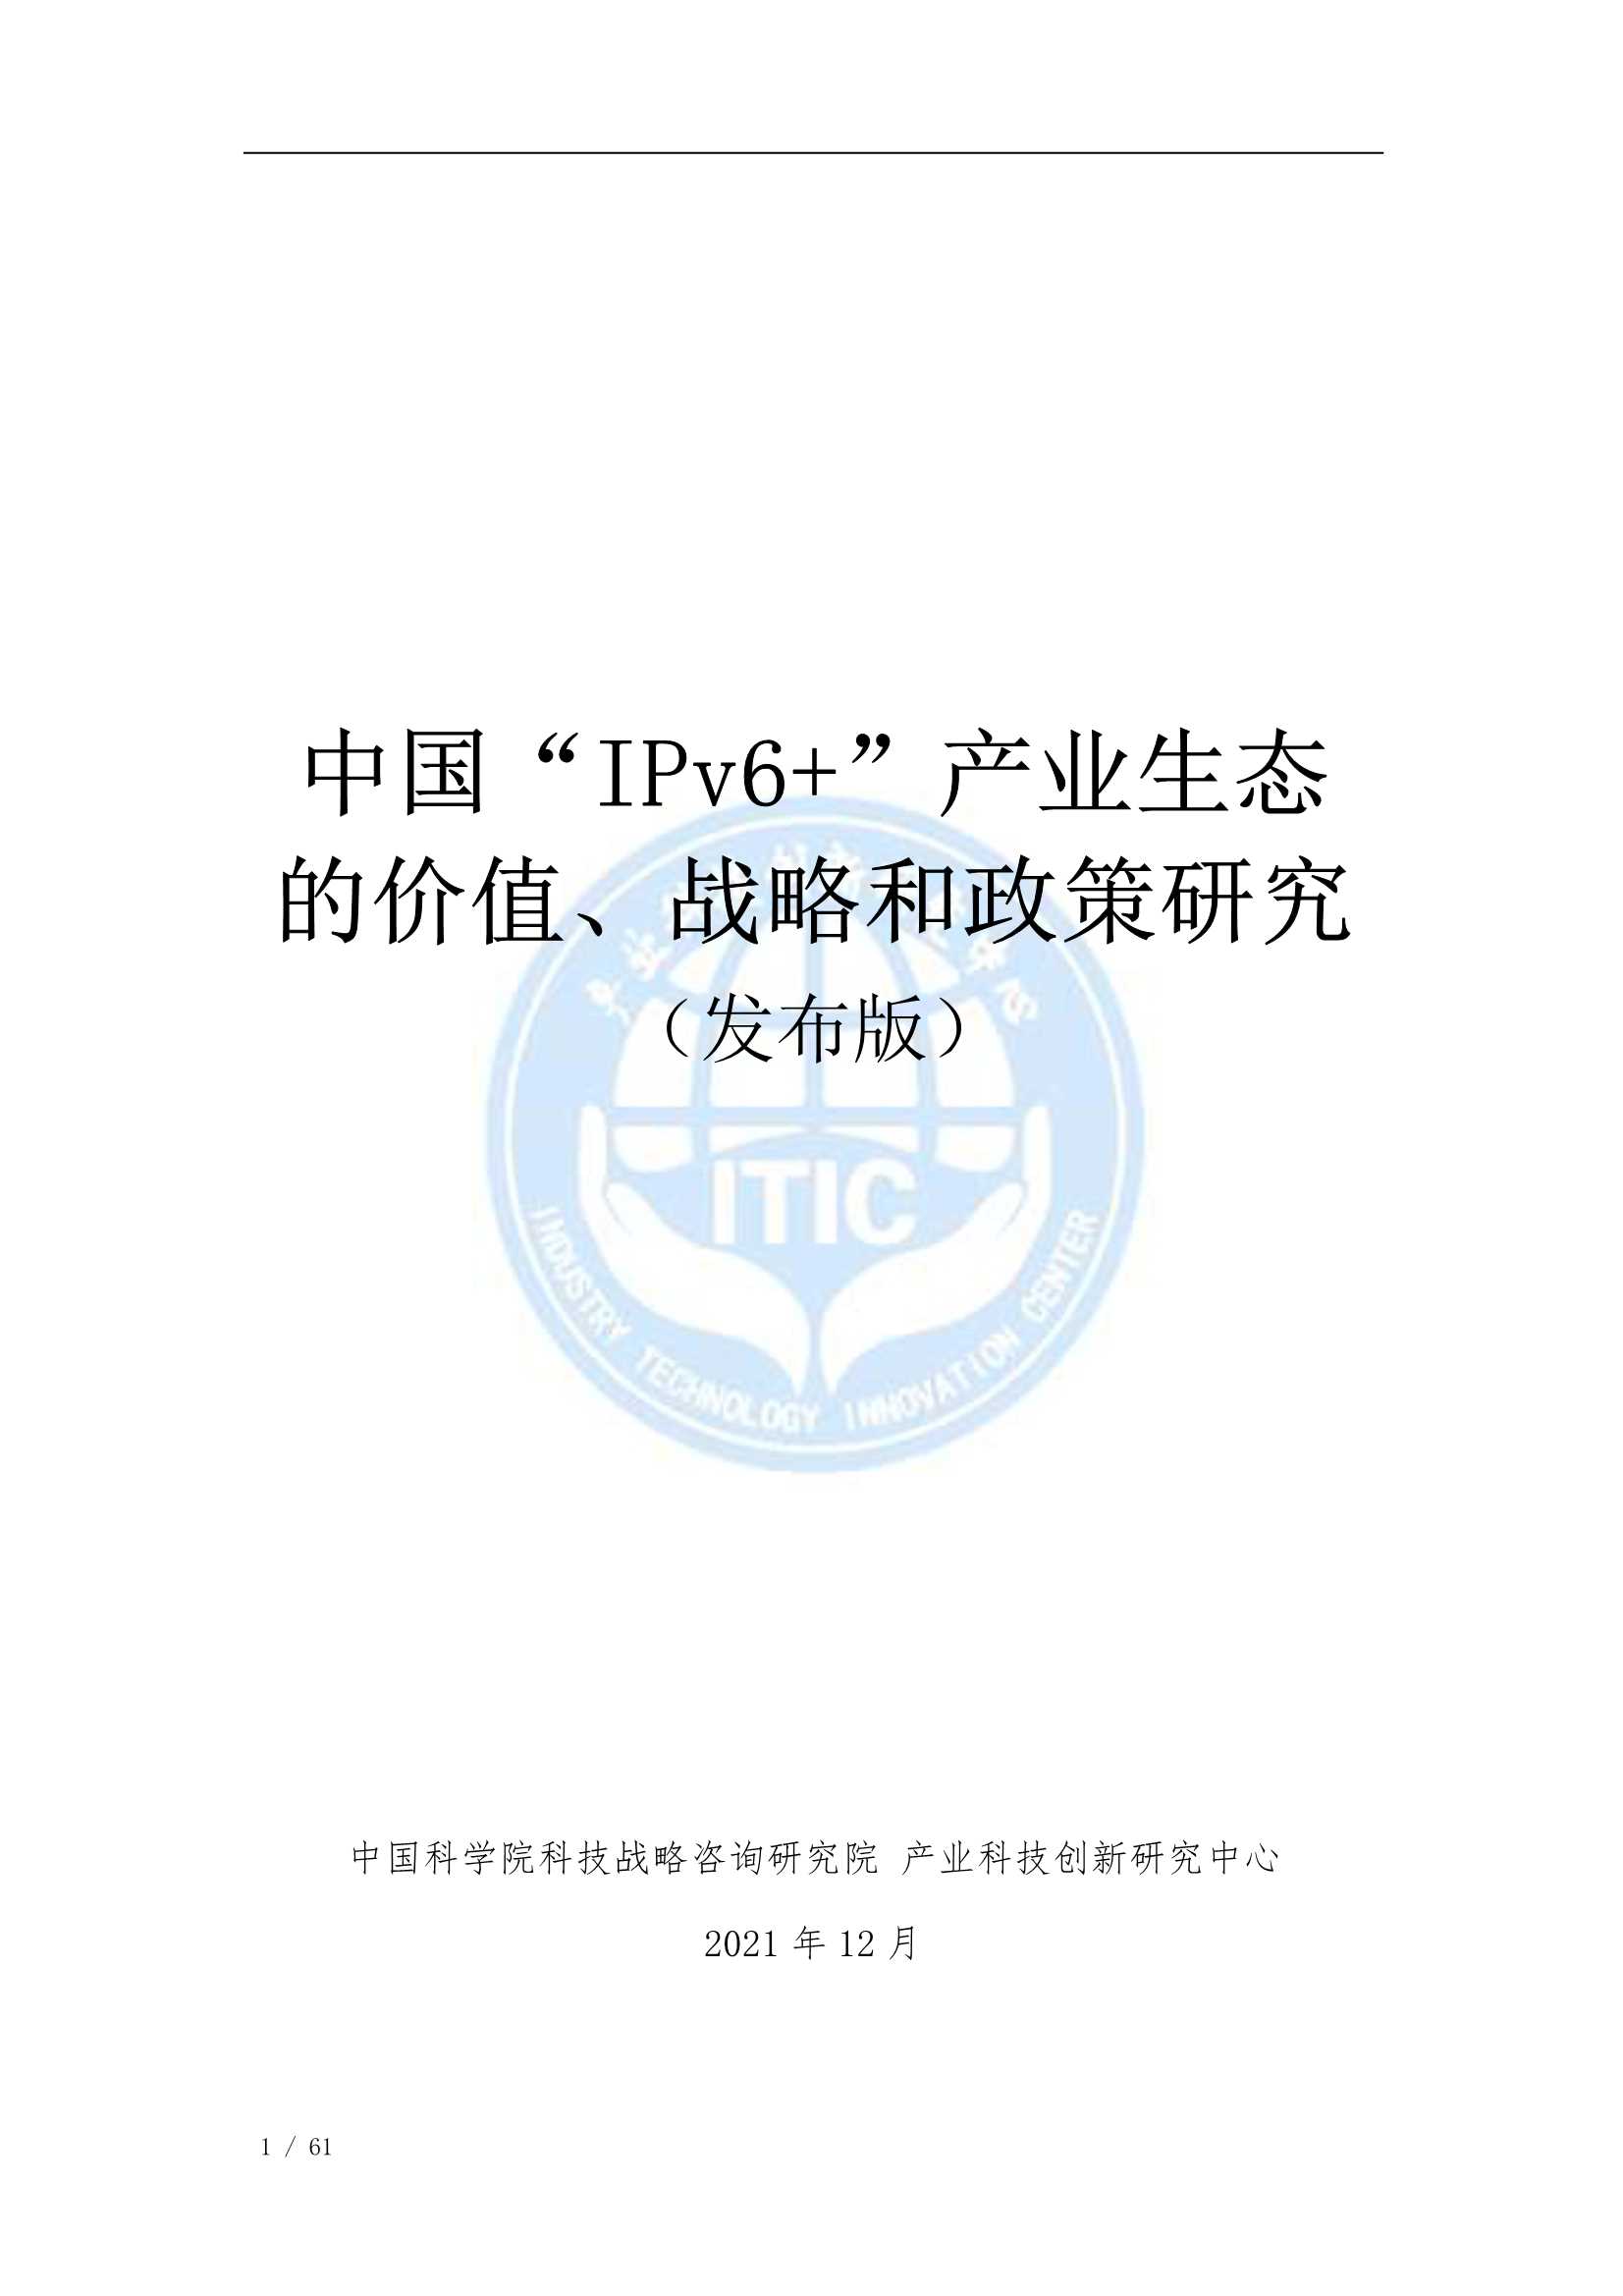 中国科学院科技战略咨询研究院-中国“IPv6 ”产业生态的价值、战略和政策研究（发布版）-2022.01-61页